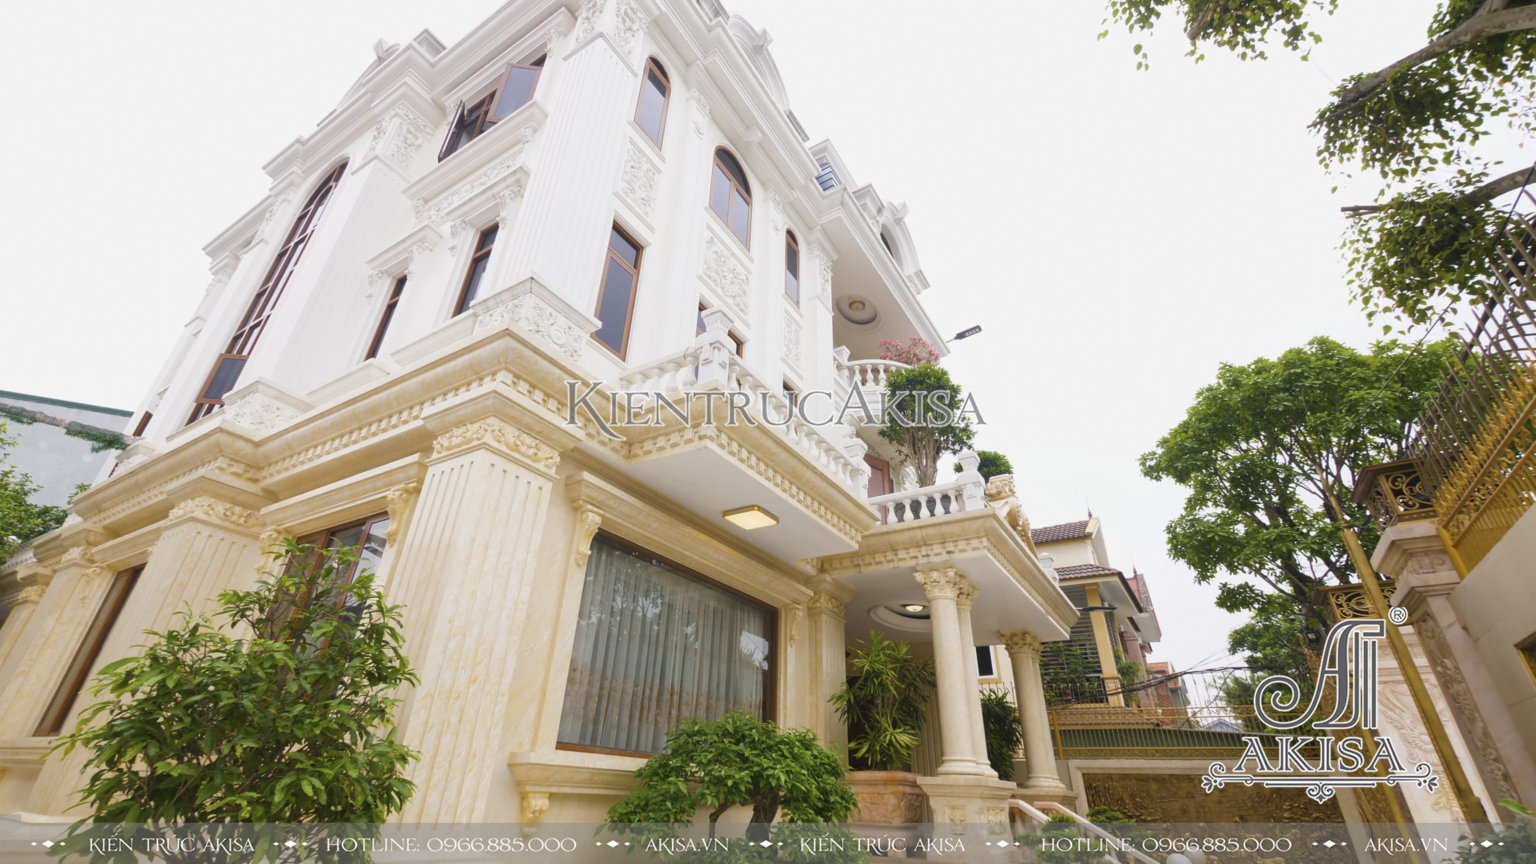 Akisa cập nhật hình ảnh thi công biệt thự tân cổ điển 3 tầng tại Nghệ An